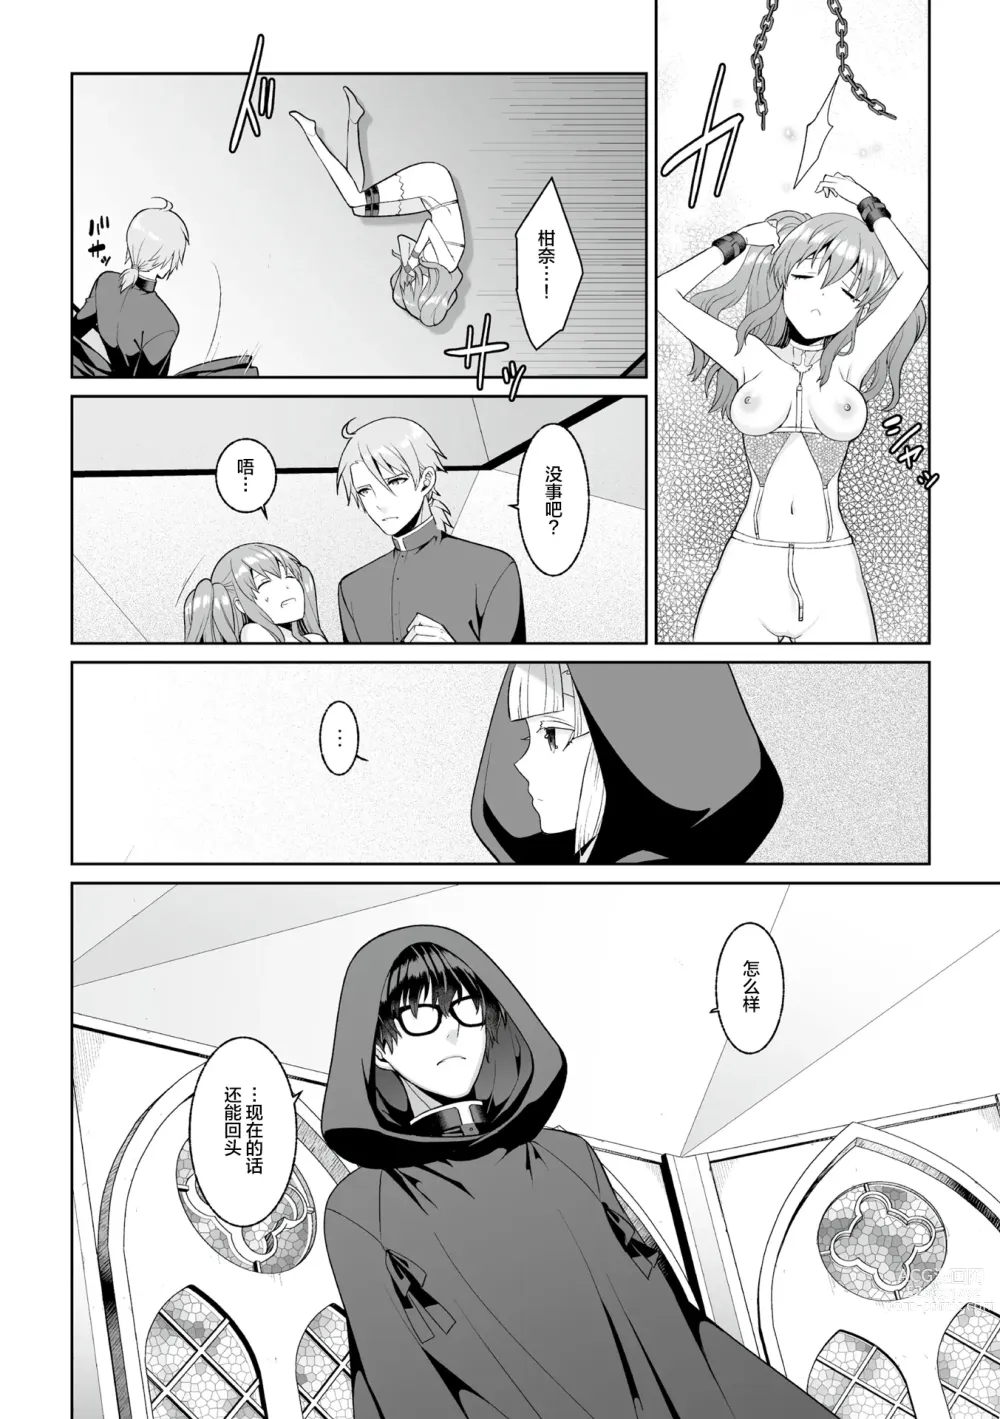 Page 23 of manga Tsukitei no Seijo Inmitsu no Utage Ch. 1